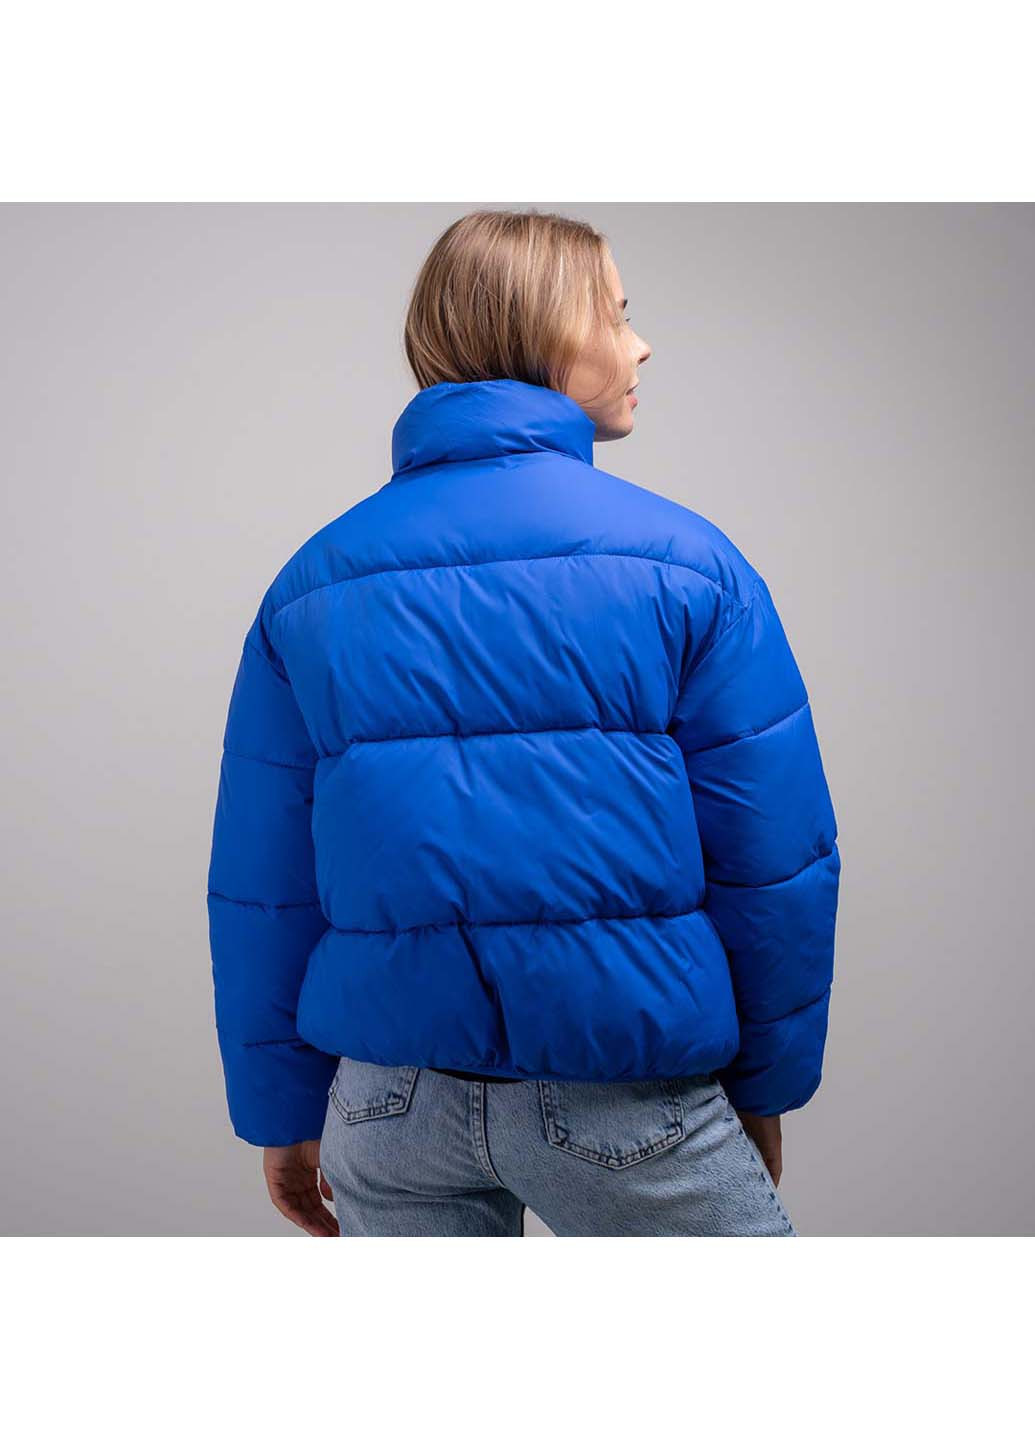 Синяя демисезонная куртка женская Fashion